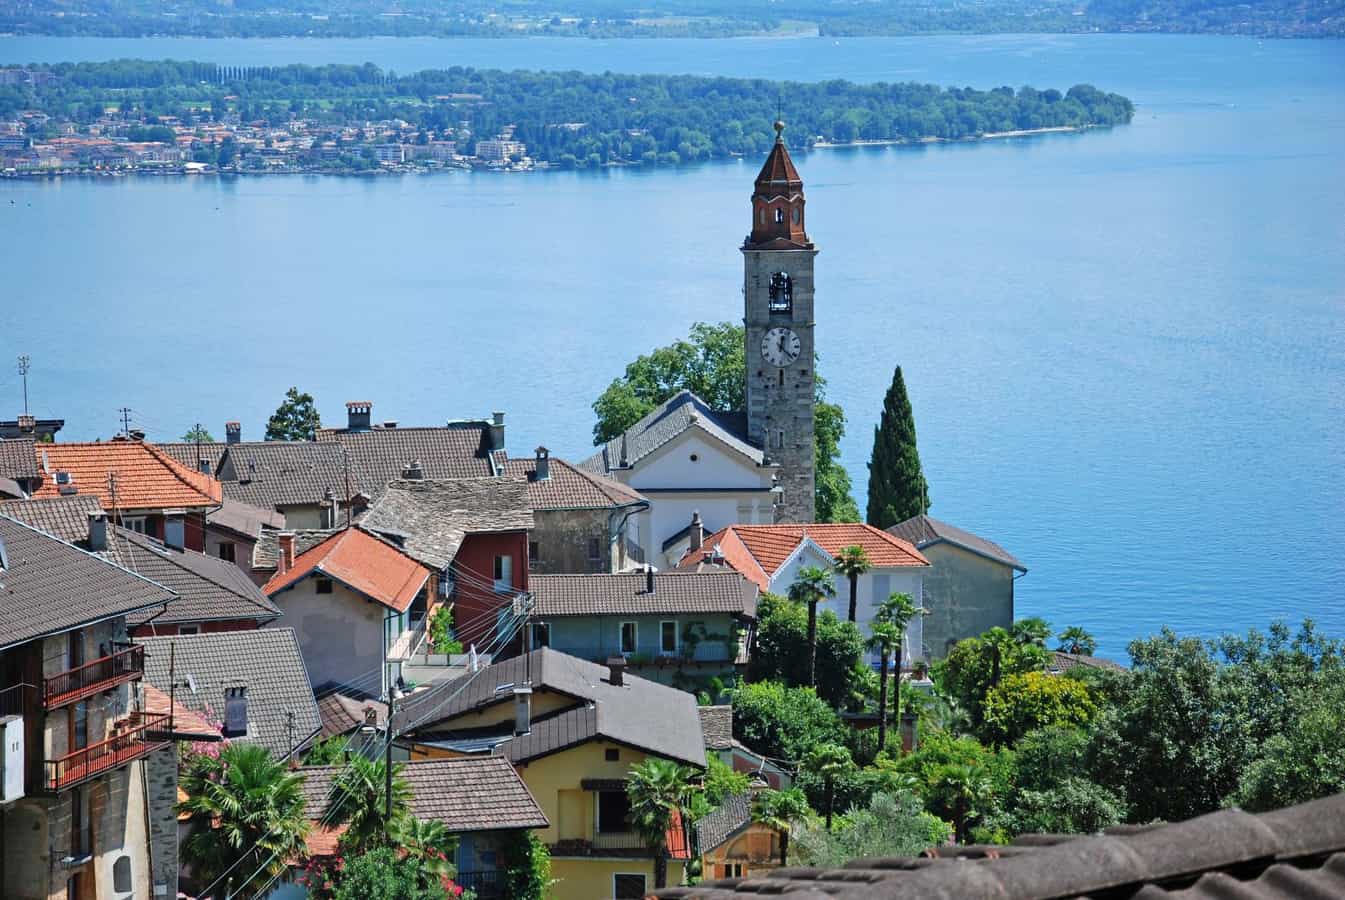 The church and village of Ronco sopra Ascona, Ticino, Switzerland